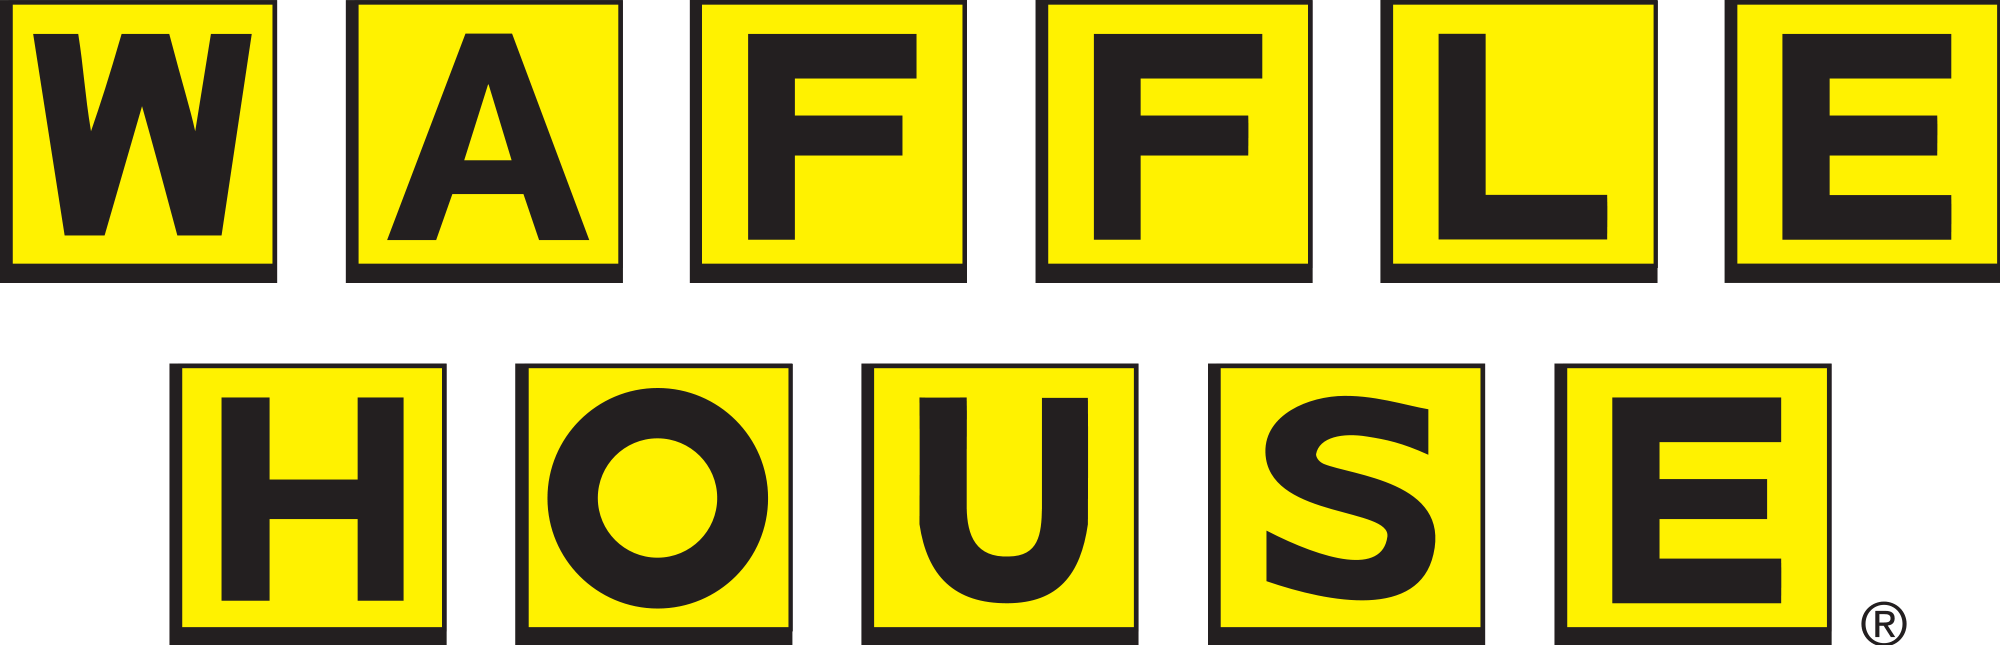 Waffle House Logo - Waffle House Logo.svg